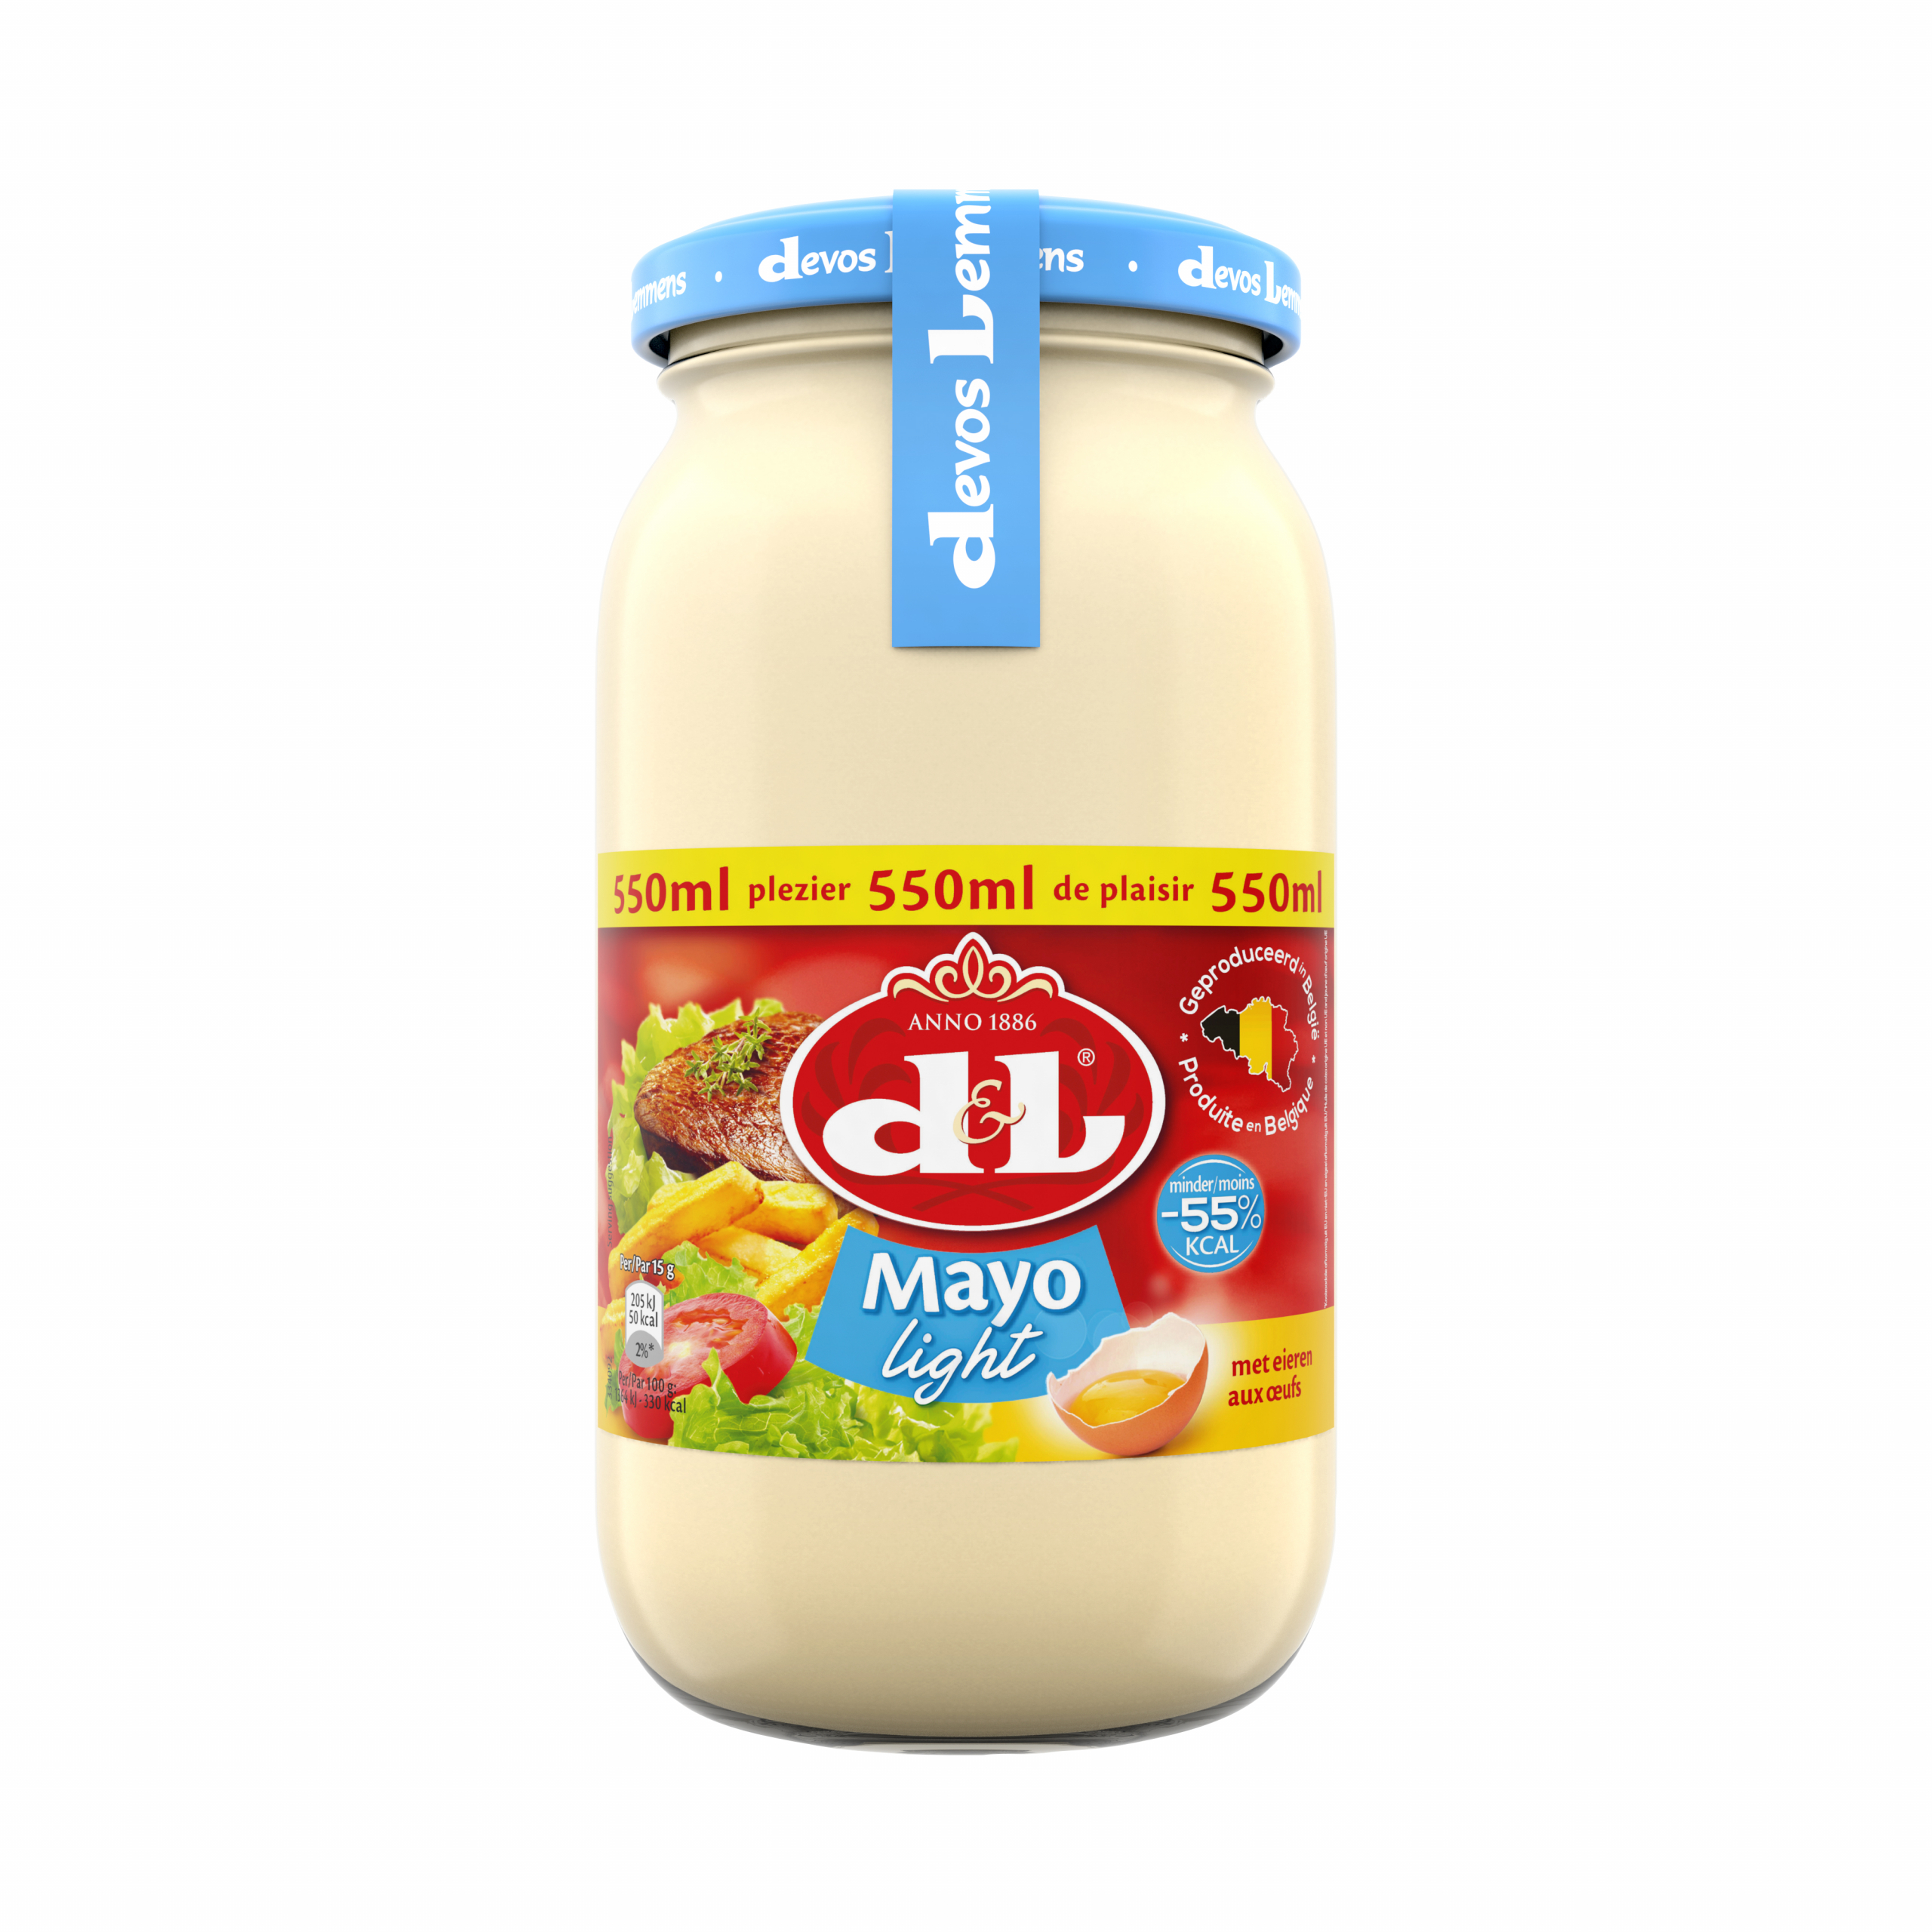 Mayo light egg -55% kcal